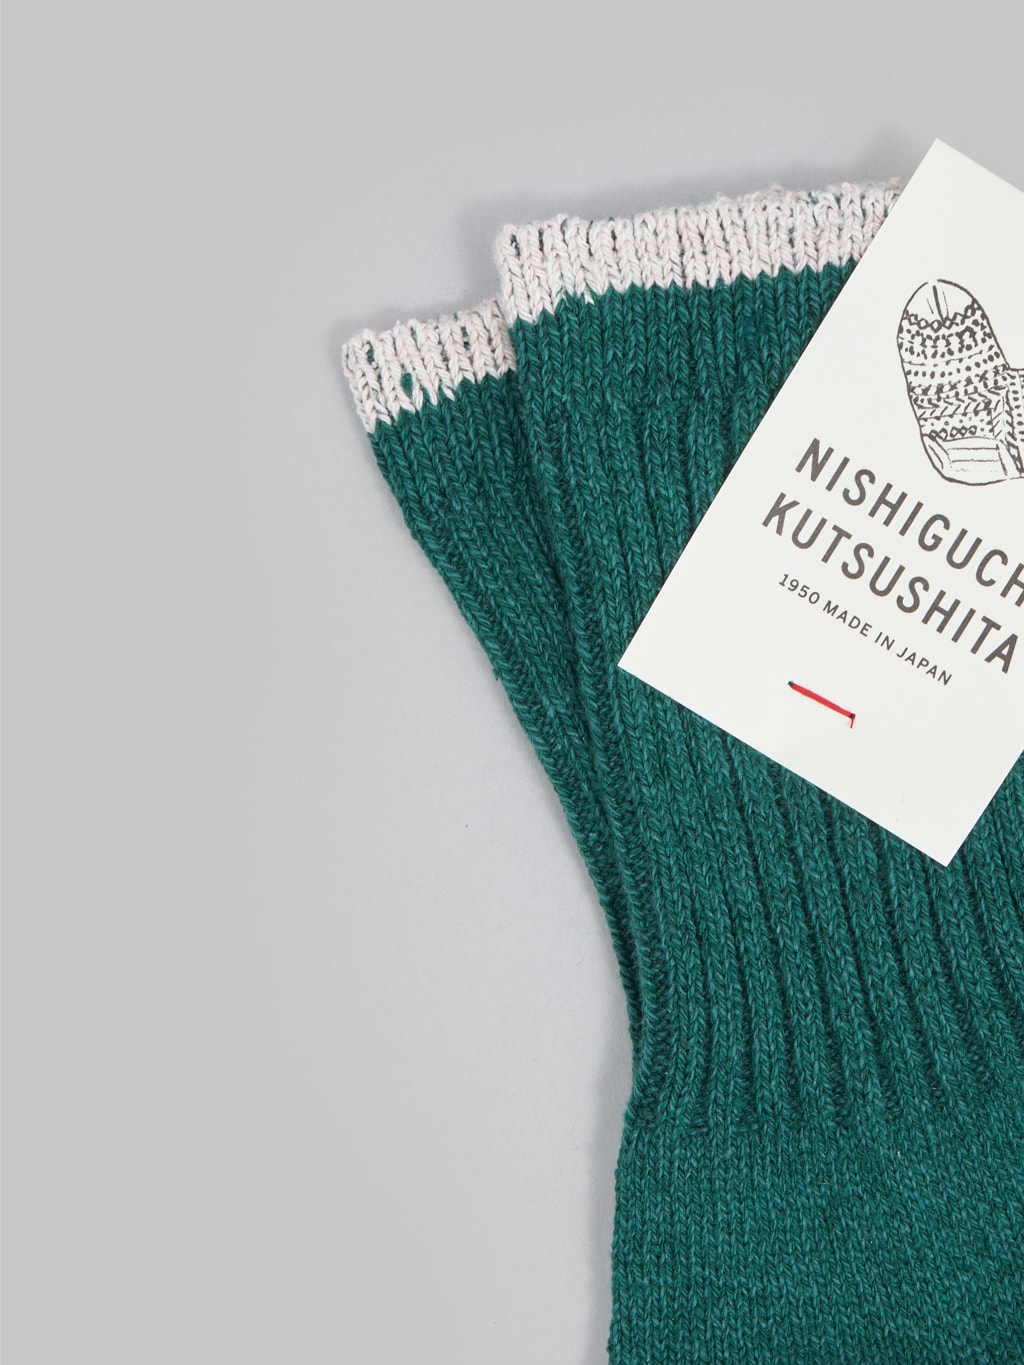 nishiguchi kutsushita silk cotton socks amazon green elastic band